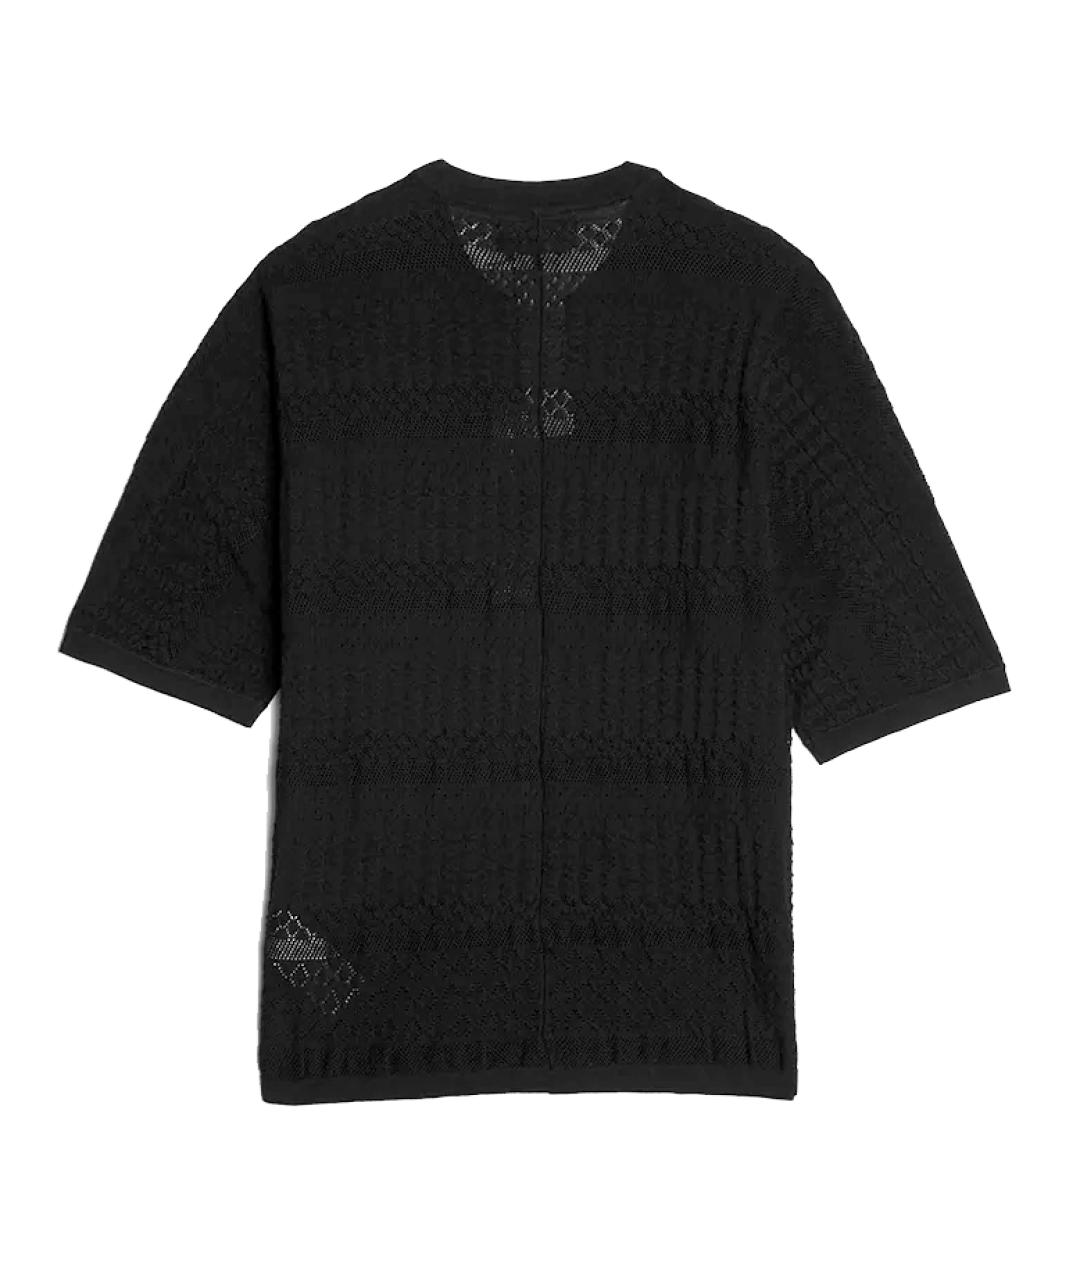 STONE ISLAND SHADOW PROJECT Черный хлопковый джемпер / свитер, фото 8